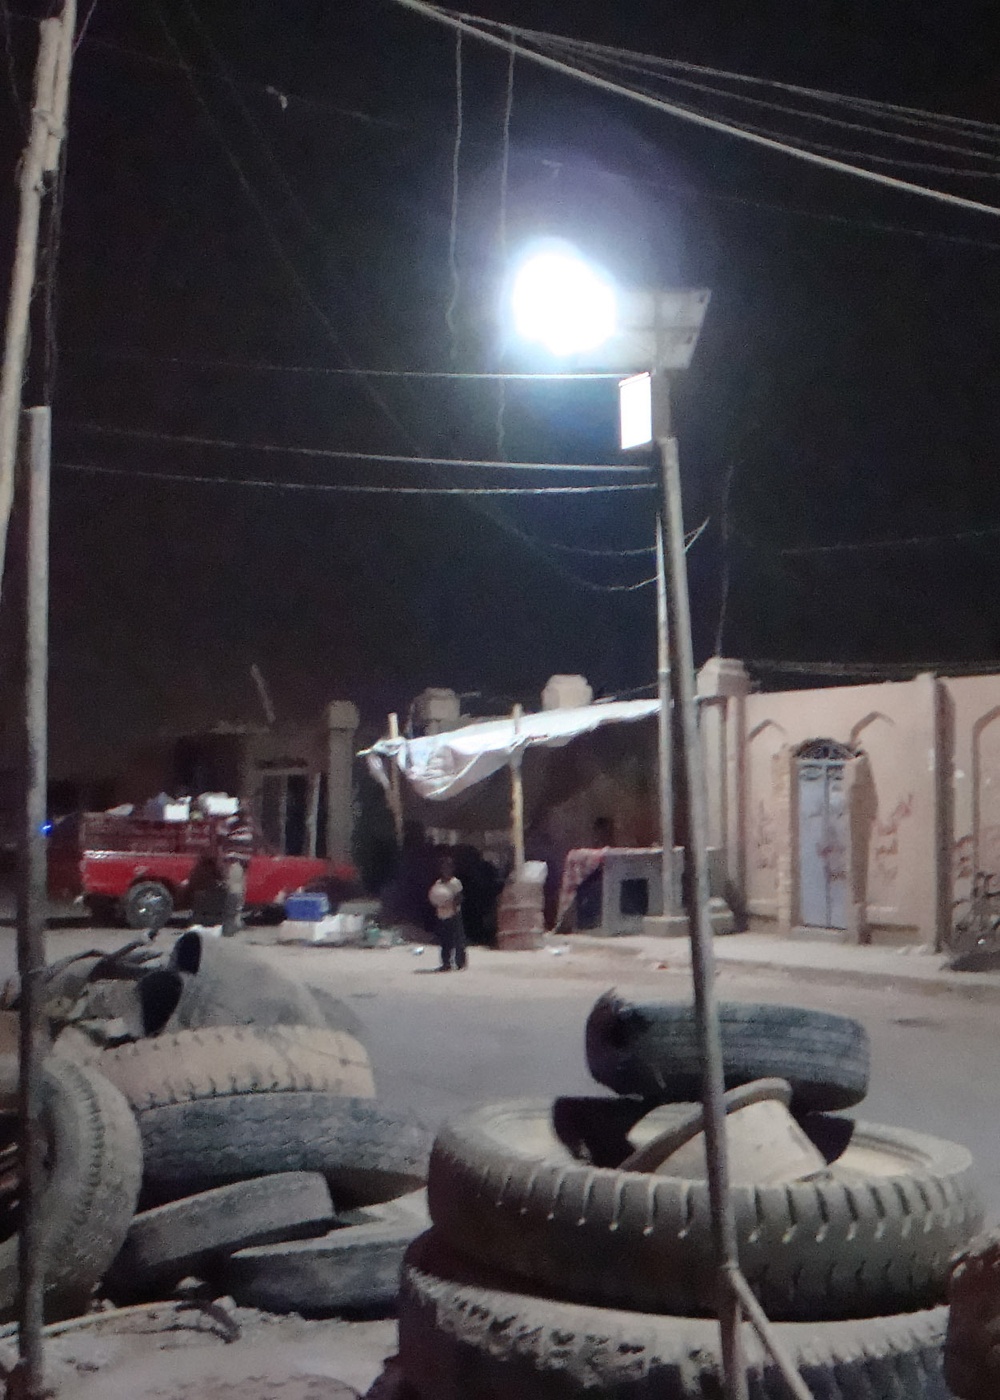 Solar lights continue to shine in northwest Baghdad, Abu Ghraib